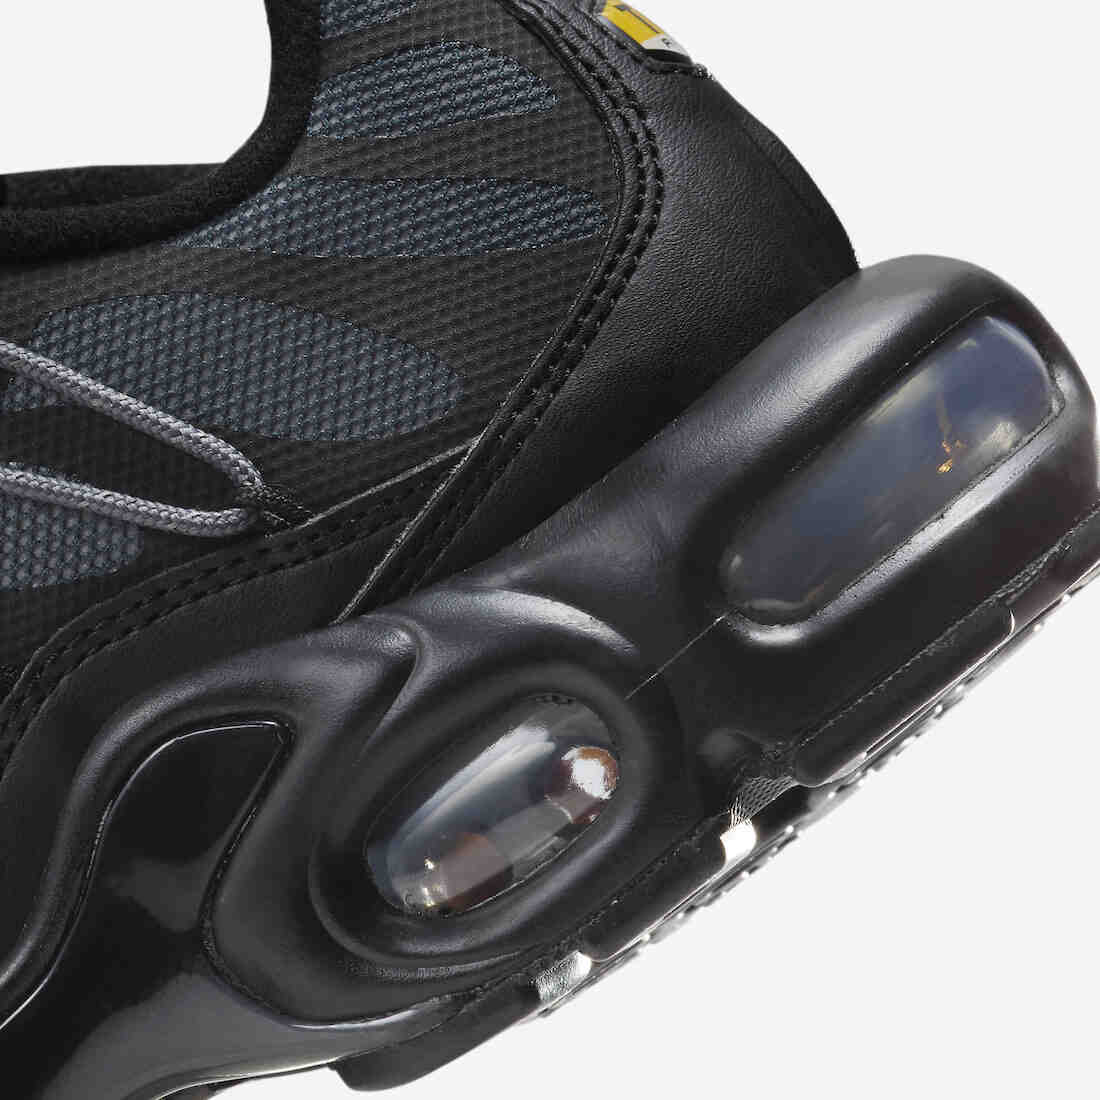 运动鞋, 耐克, Nike Air Max Plus, Nike Air Max, Nike Air, Black, Air Max - 耐克 Air Max Plus Utility "黑色反光 "即将发布